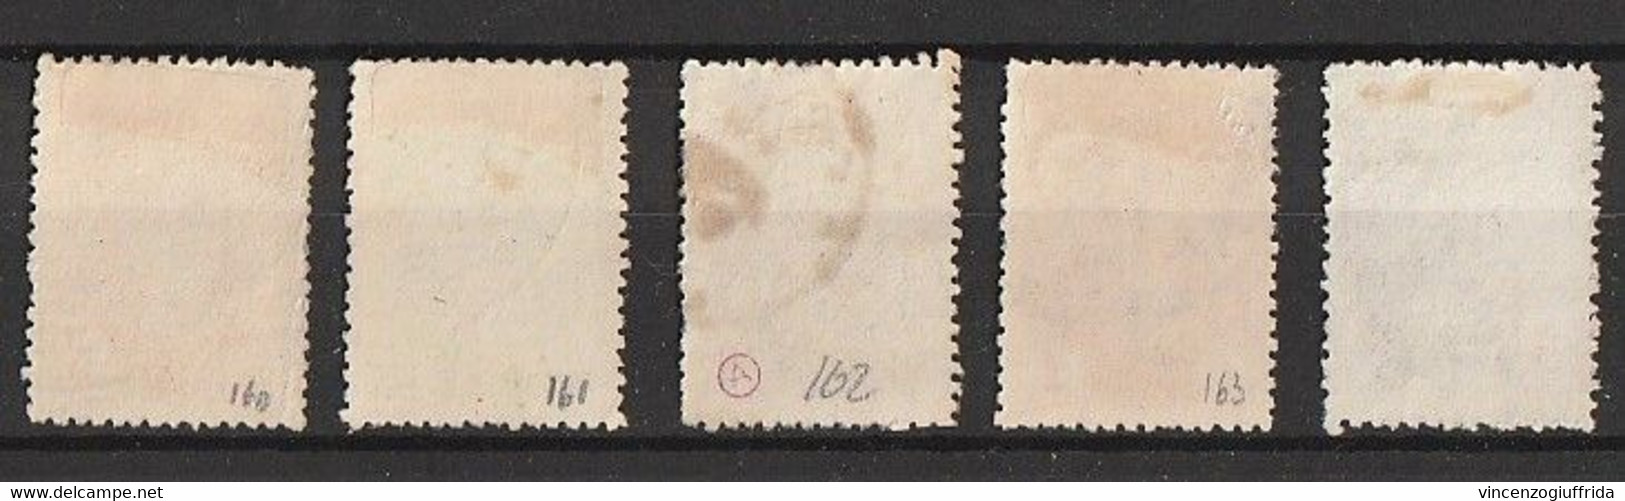 Grecia Regno 1902  Testa Di Mercurio -Catalogo Unificato Serie 5 V. 160/64 Annullati - Used Stamps